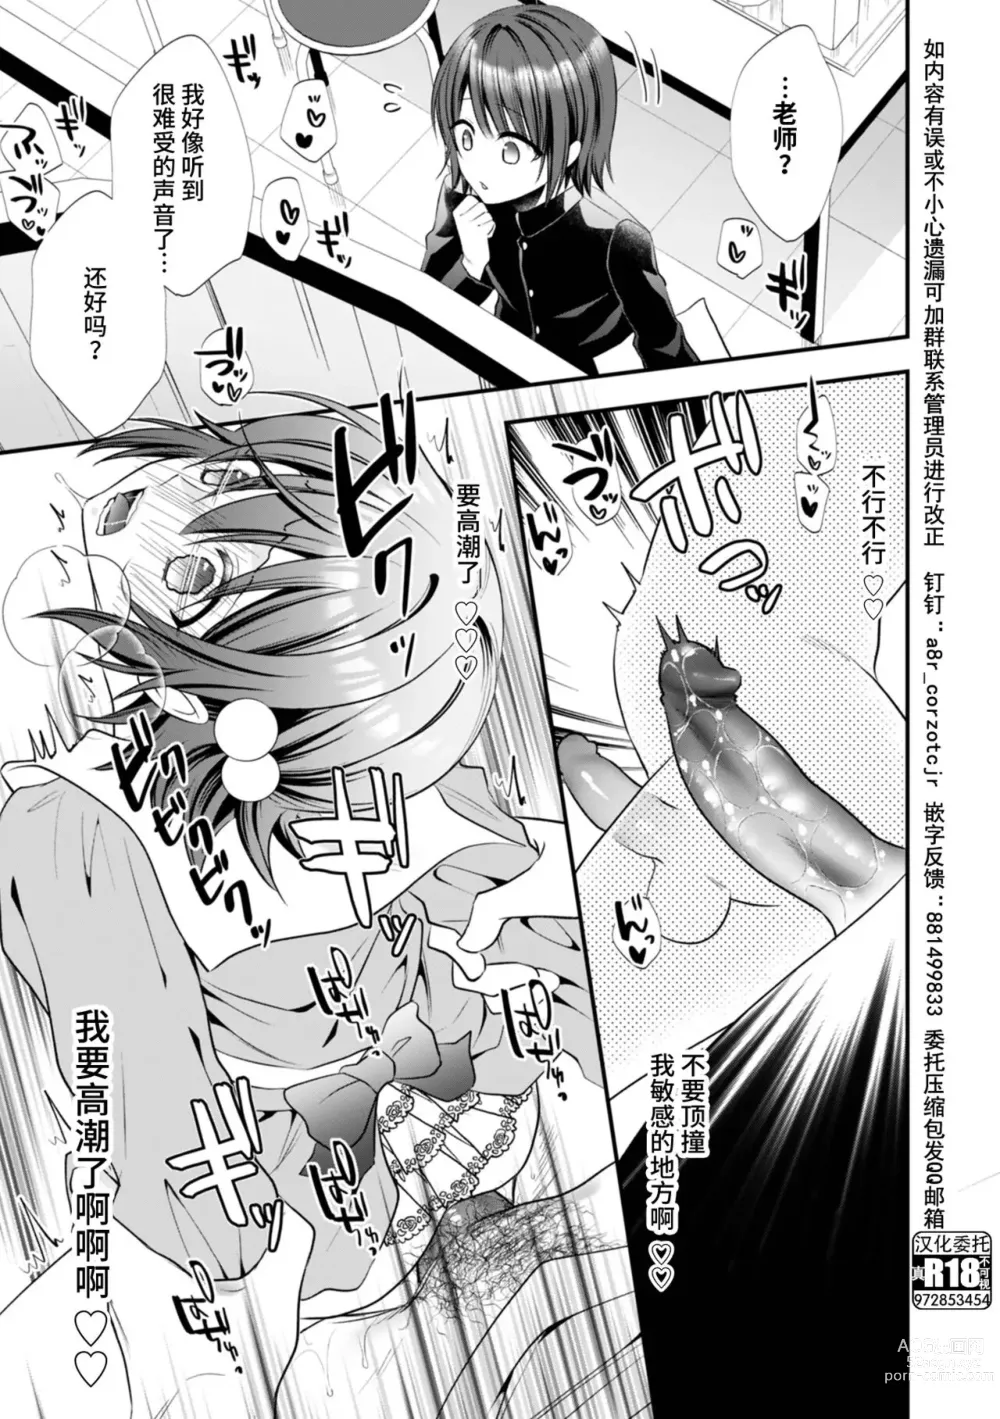 Page 13 of manga Hatsujou Nemuri Hime - Estrus sleeping princess